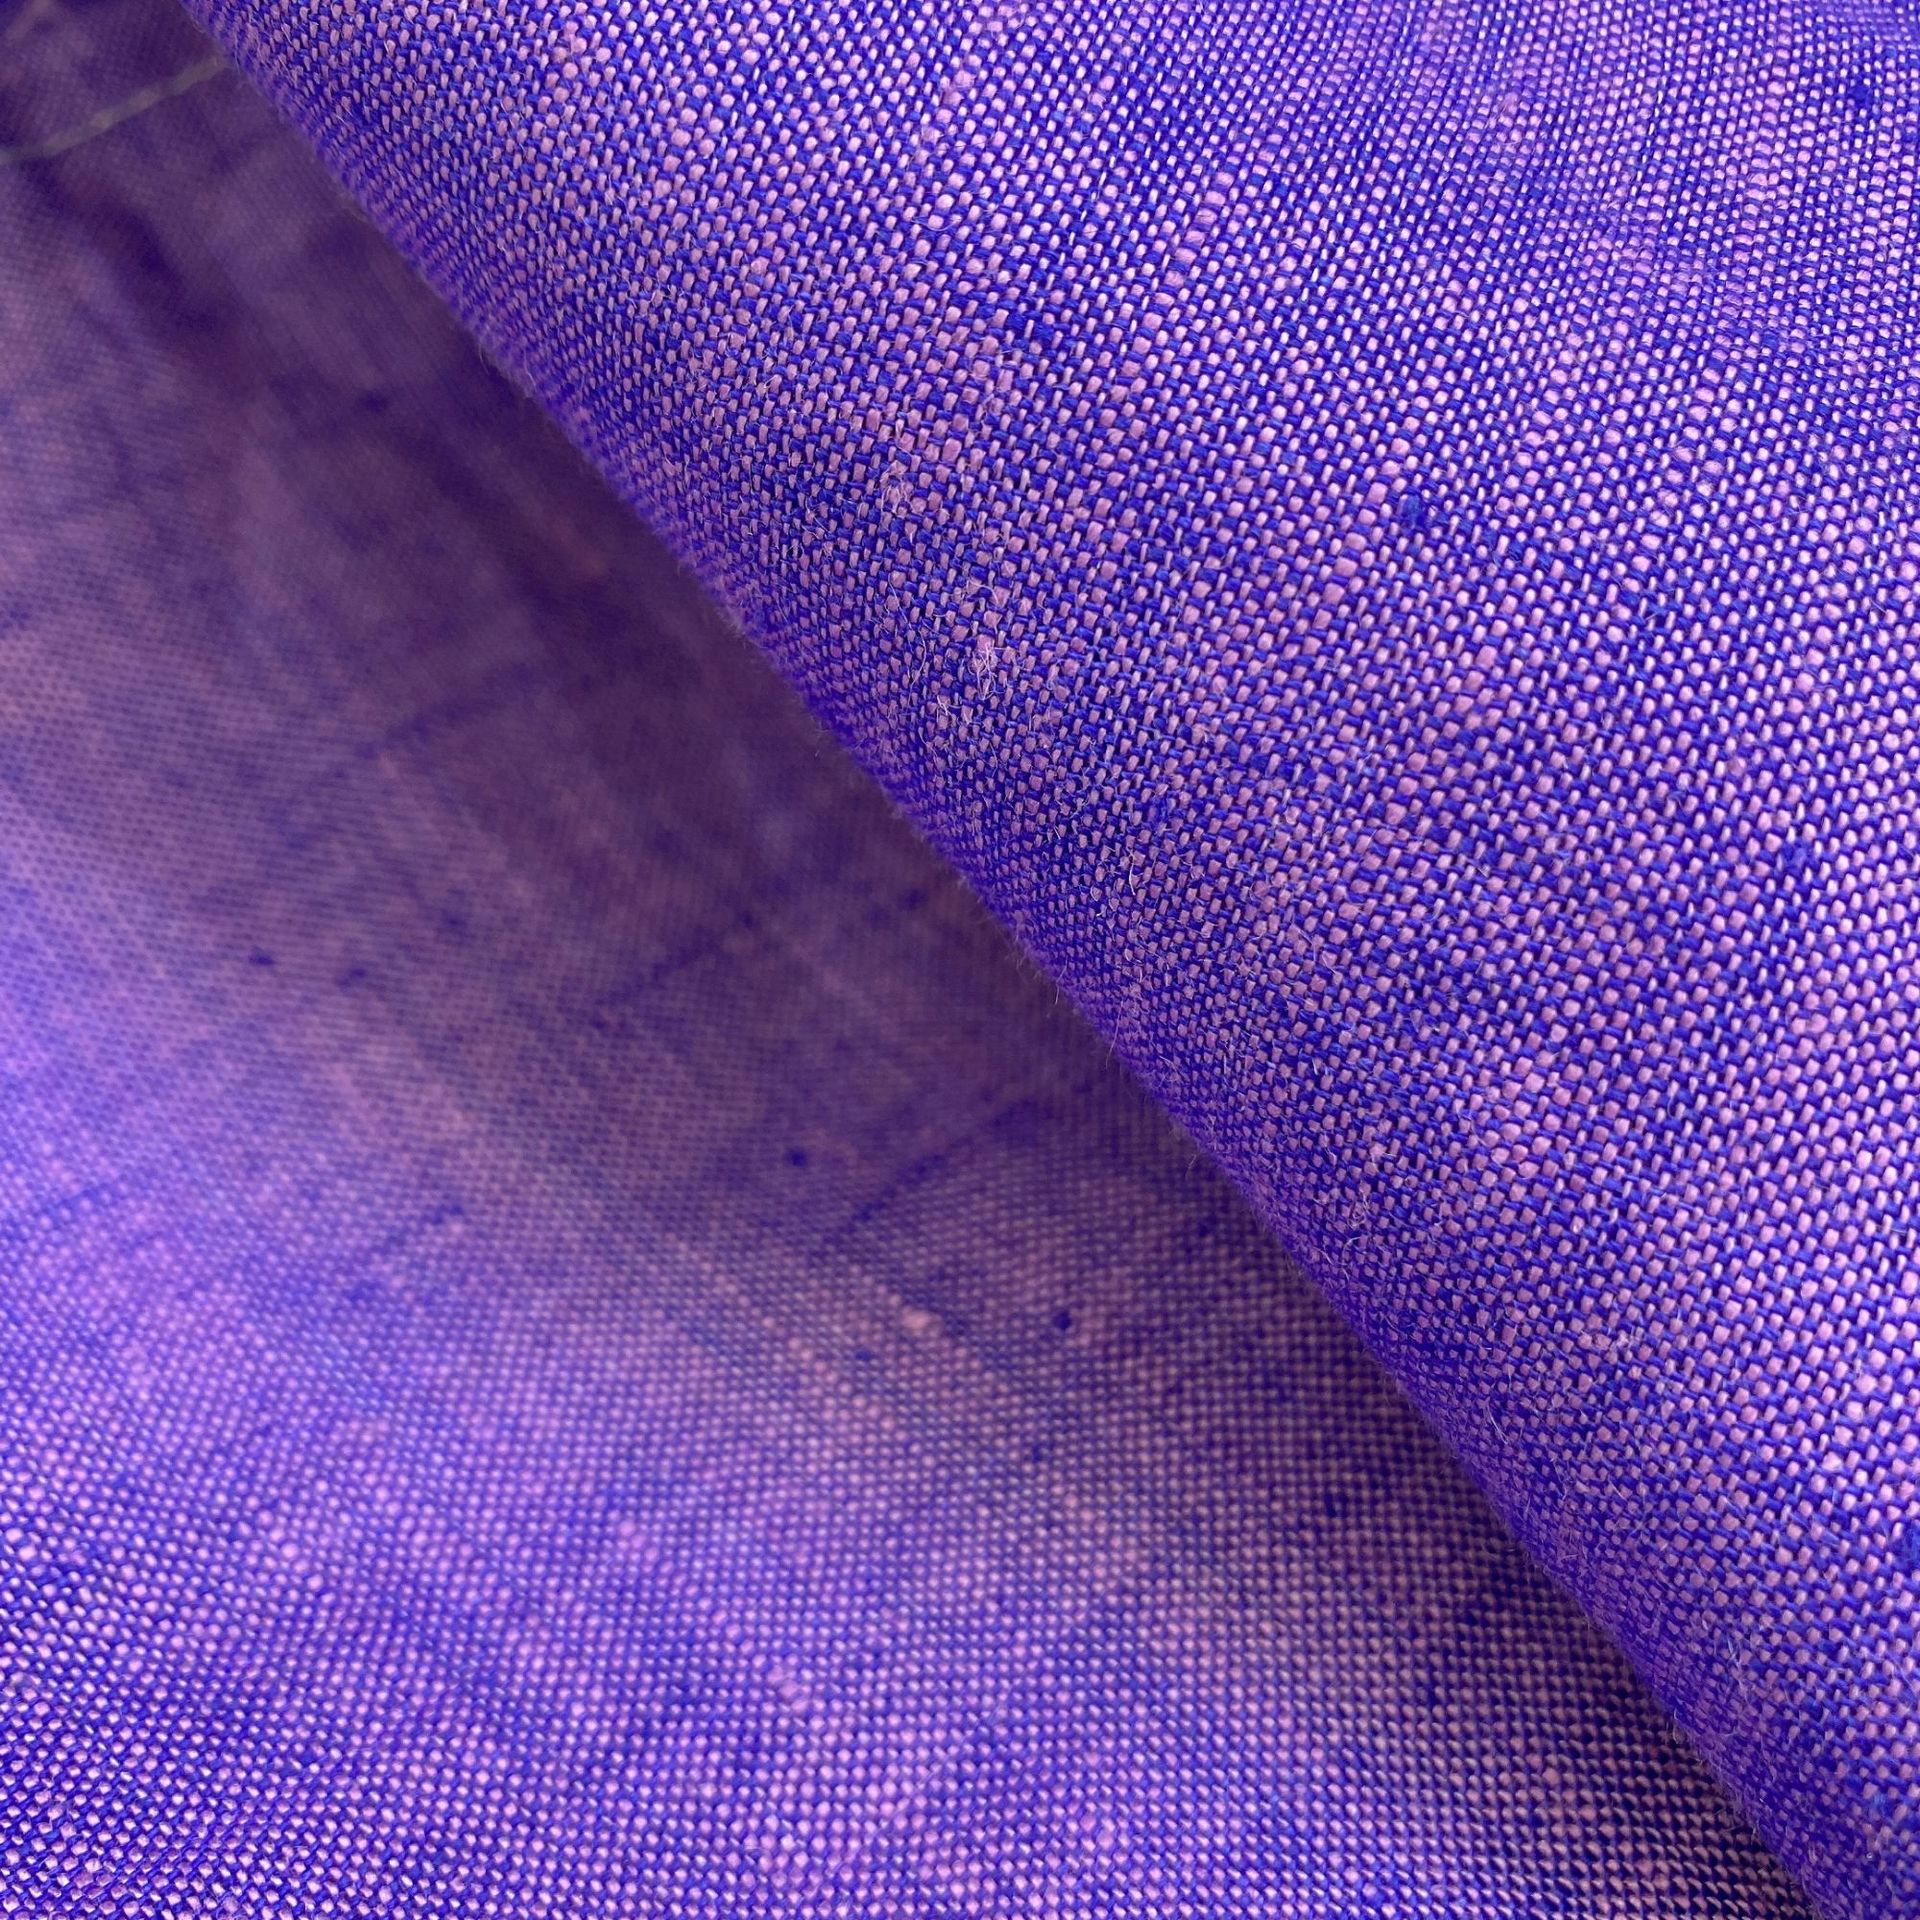 成新尚麻-紫色纯亚麻色织# 时尚潮流款服装麻料 色织鲜艳色彩面料